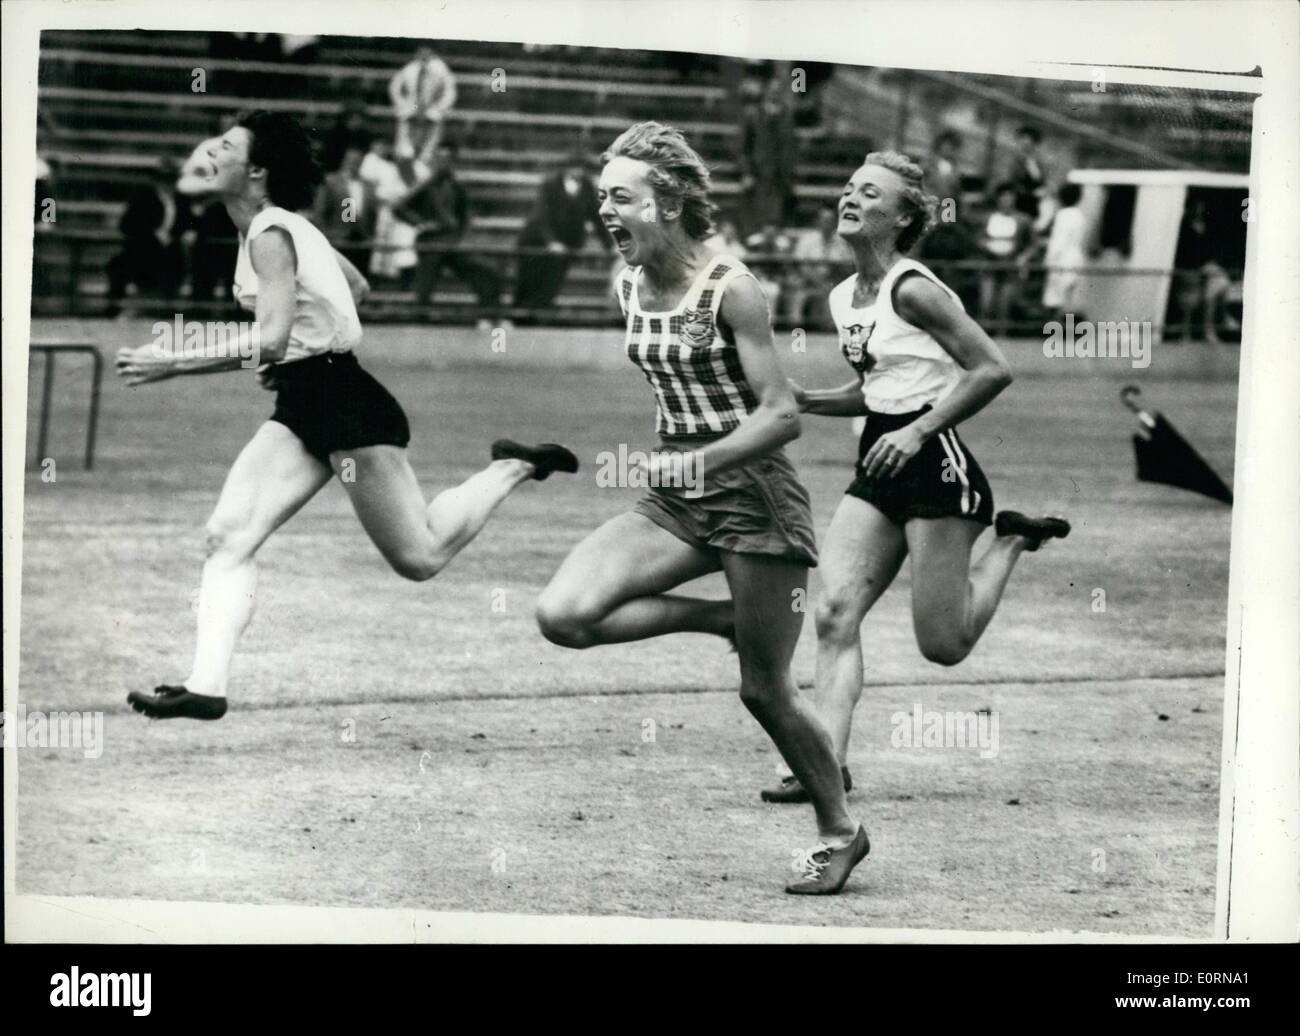 Marzo 03, 1960 - La medallista olímpica australiana BETTY CUTHBERT ESTABLECE UN NUEVO RÉCORD MUNDIAL DE 60 METROS: En el viento y condiciones sombrías, registros galore pasó por la Junta, y otros fueron igualadas, en el último día de la mujer de Nueva Gales del Sur campeonatos de atletismo en el terreno deportivo de Sydney el pasado sábado 27 de febrero. En un terreno húmedo, medallista de oro Olímpico Australiano Betty Cuthbert establecer nuevo récord mundial de 60 metros de 7,2 segundos, con lo que el recorte a un segundo Polonia Stella Walsh's world tiempo de 7.3 segundos, establecido en 1933 Foto de stock